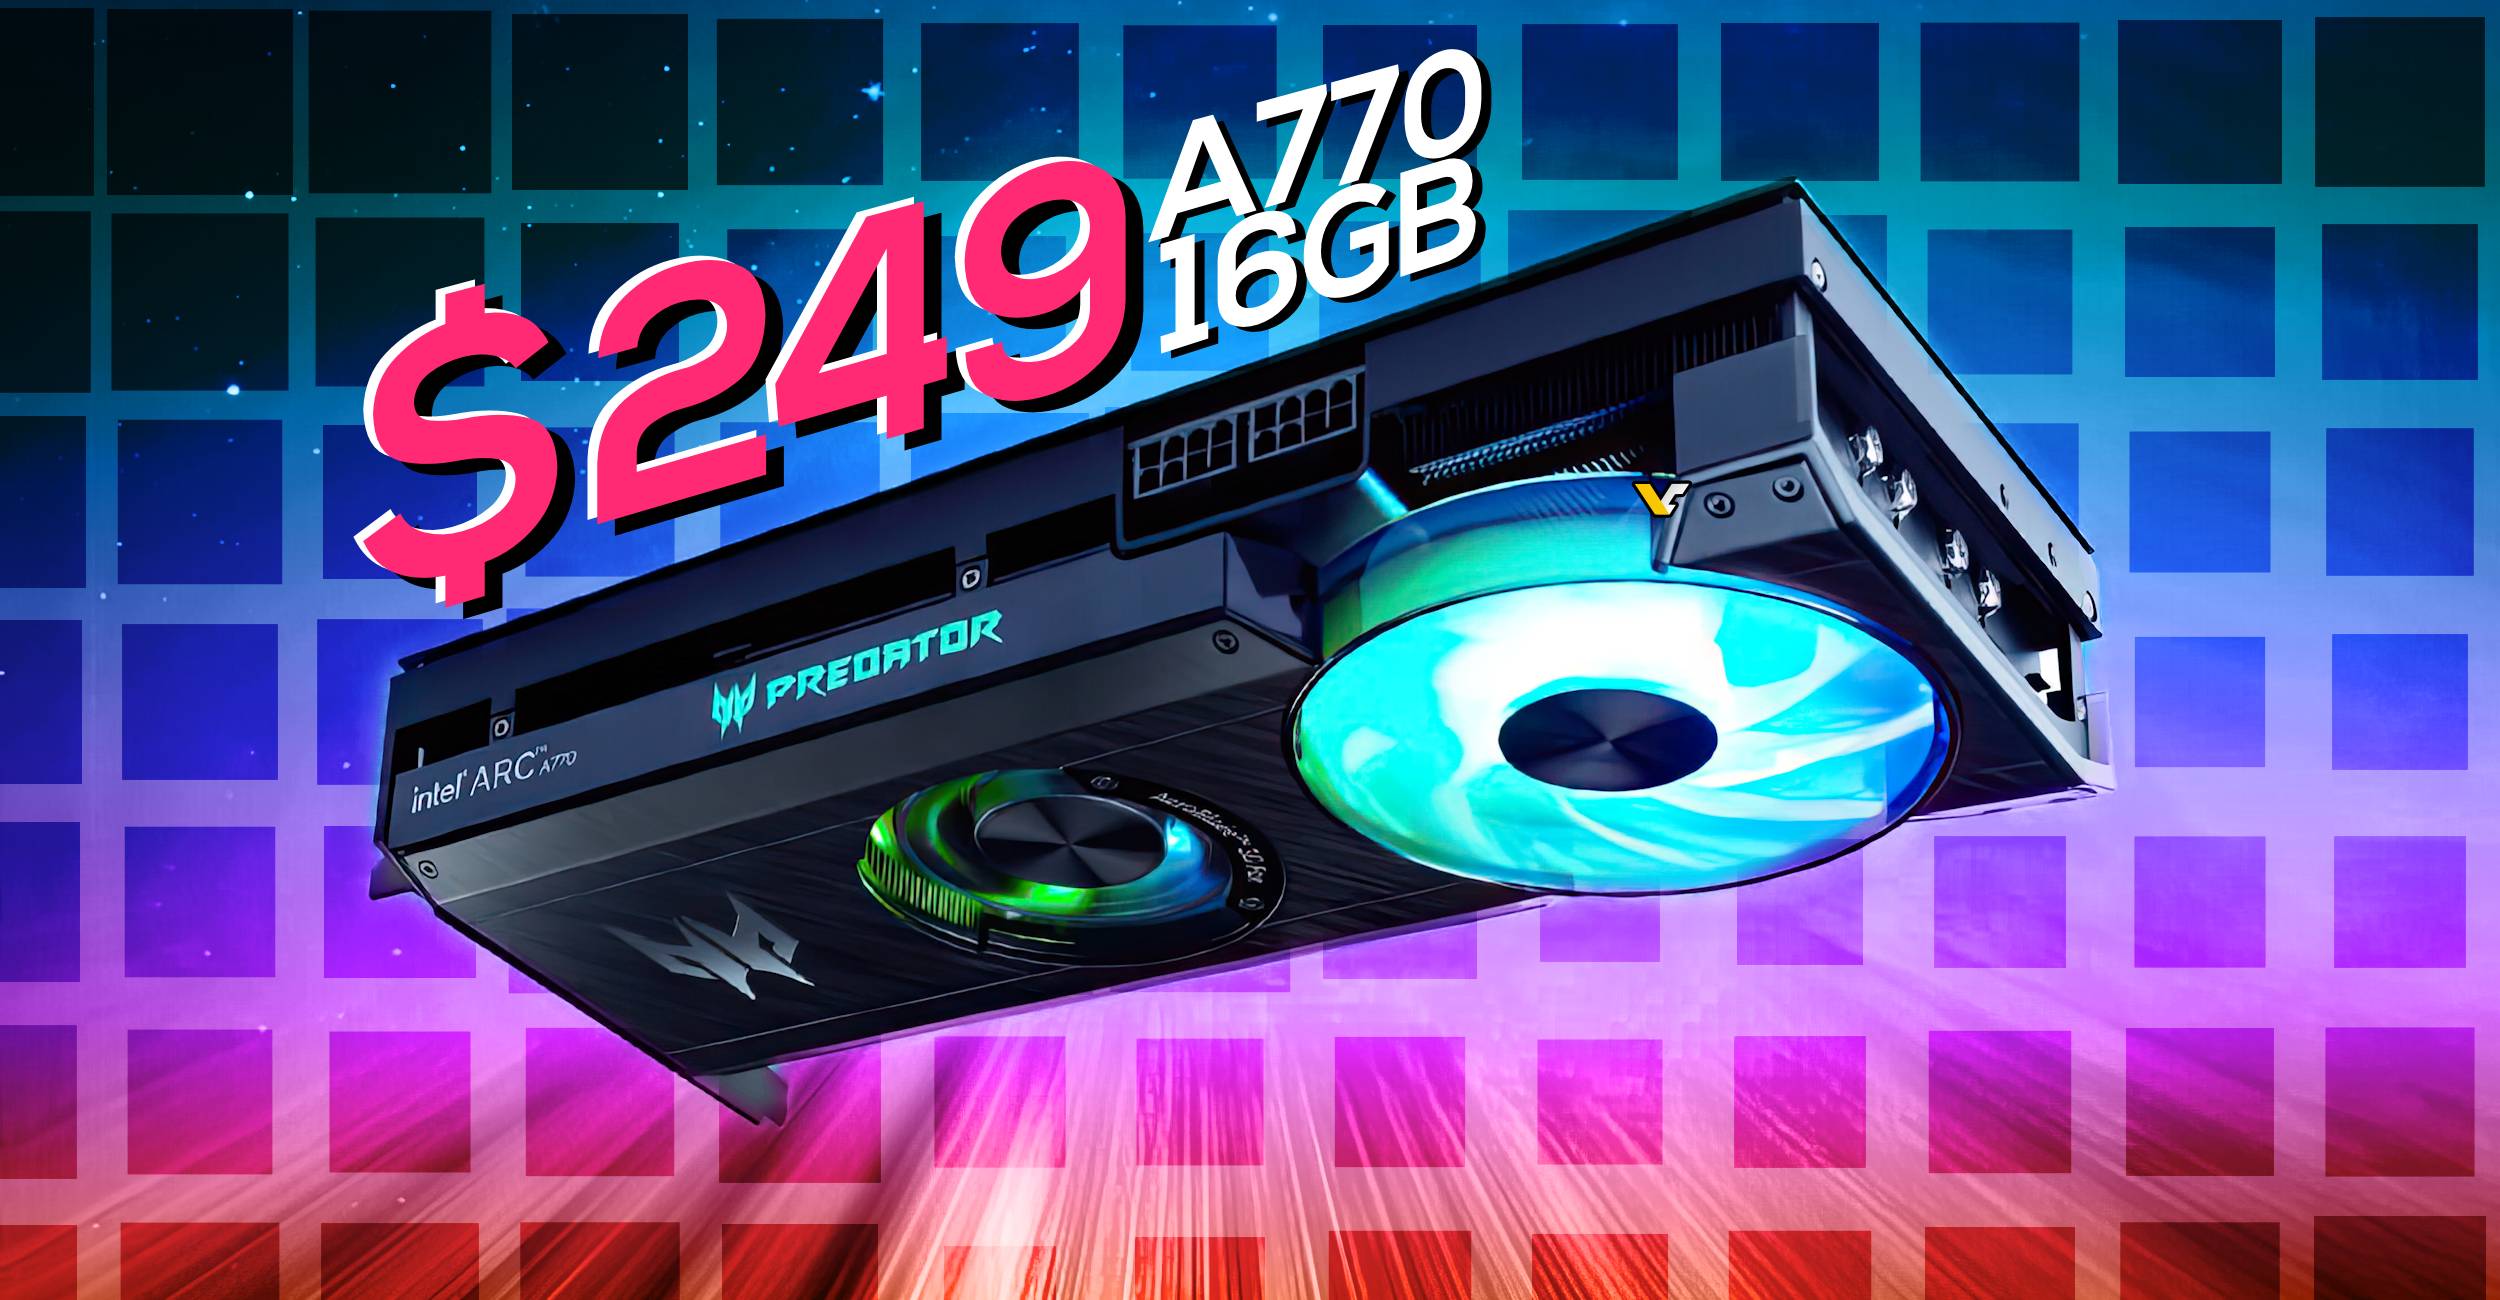 Intel Arc A770 8GB 16GB Graphics Card Gaming NVIDIA GPU GDDR6 256bit HDMI*1  DP*3 PCI Express 4.0 x16 Video card